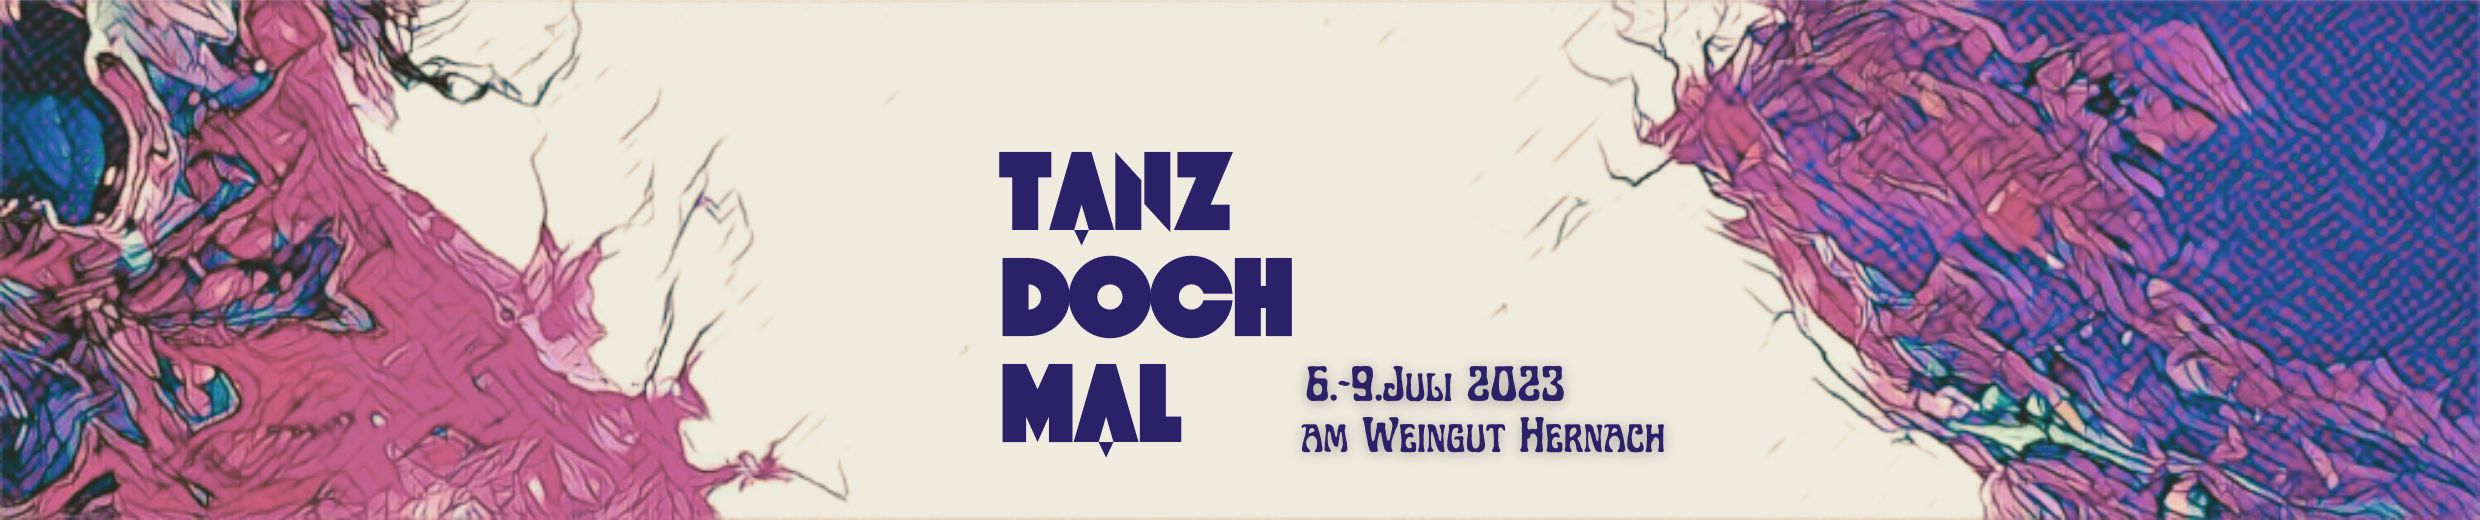 tanz doch mal boutique festival - austria 2023